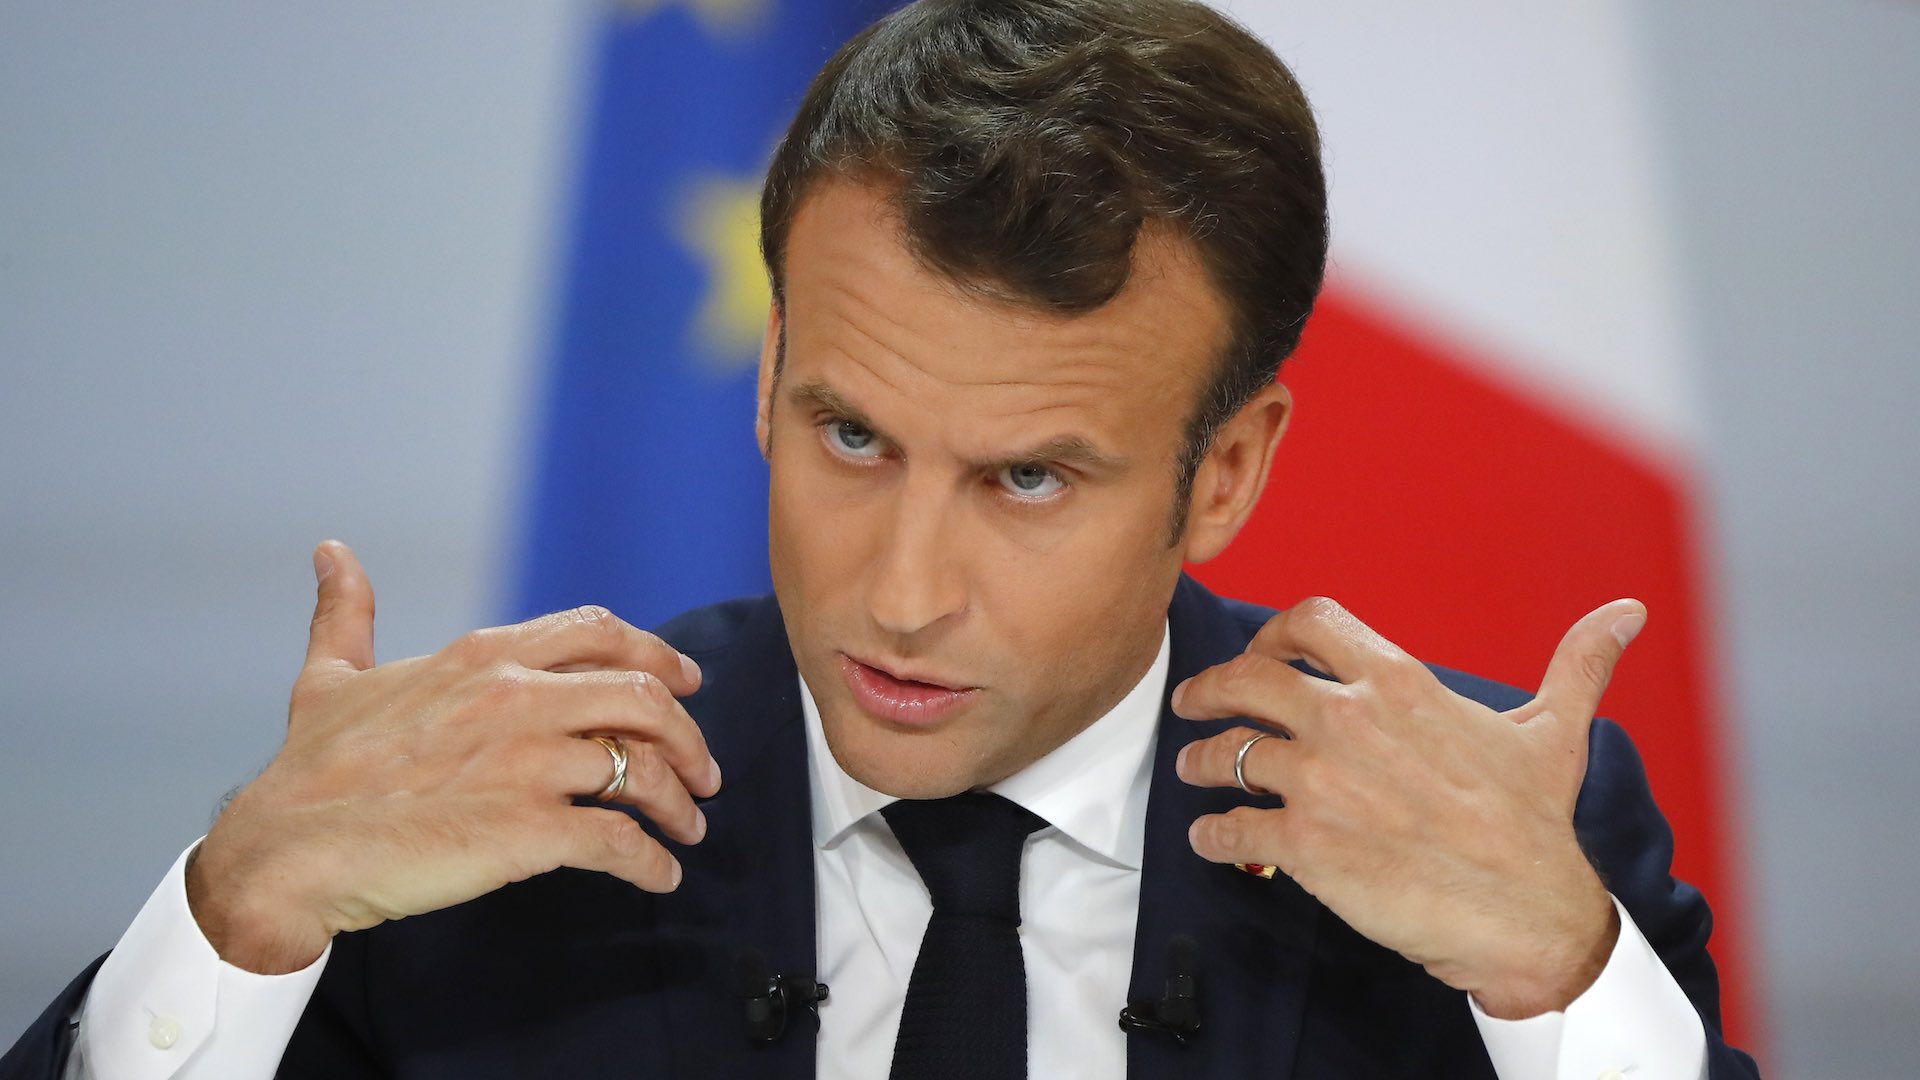 Macron bajará impuestos y subirá pensiones en respuesta a las protestas de los chalecos amarillos